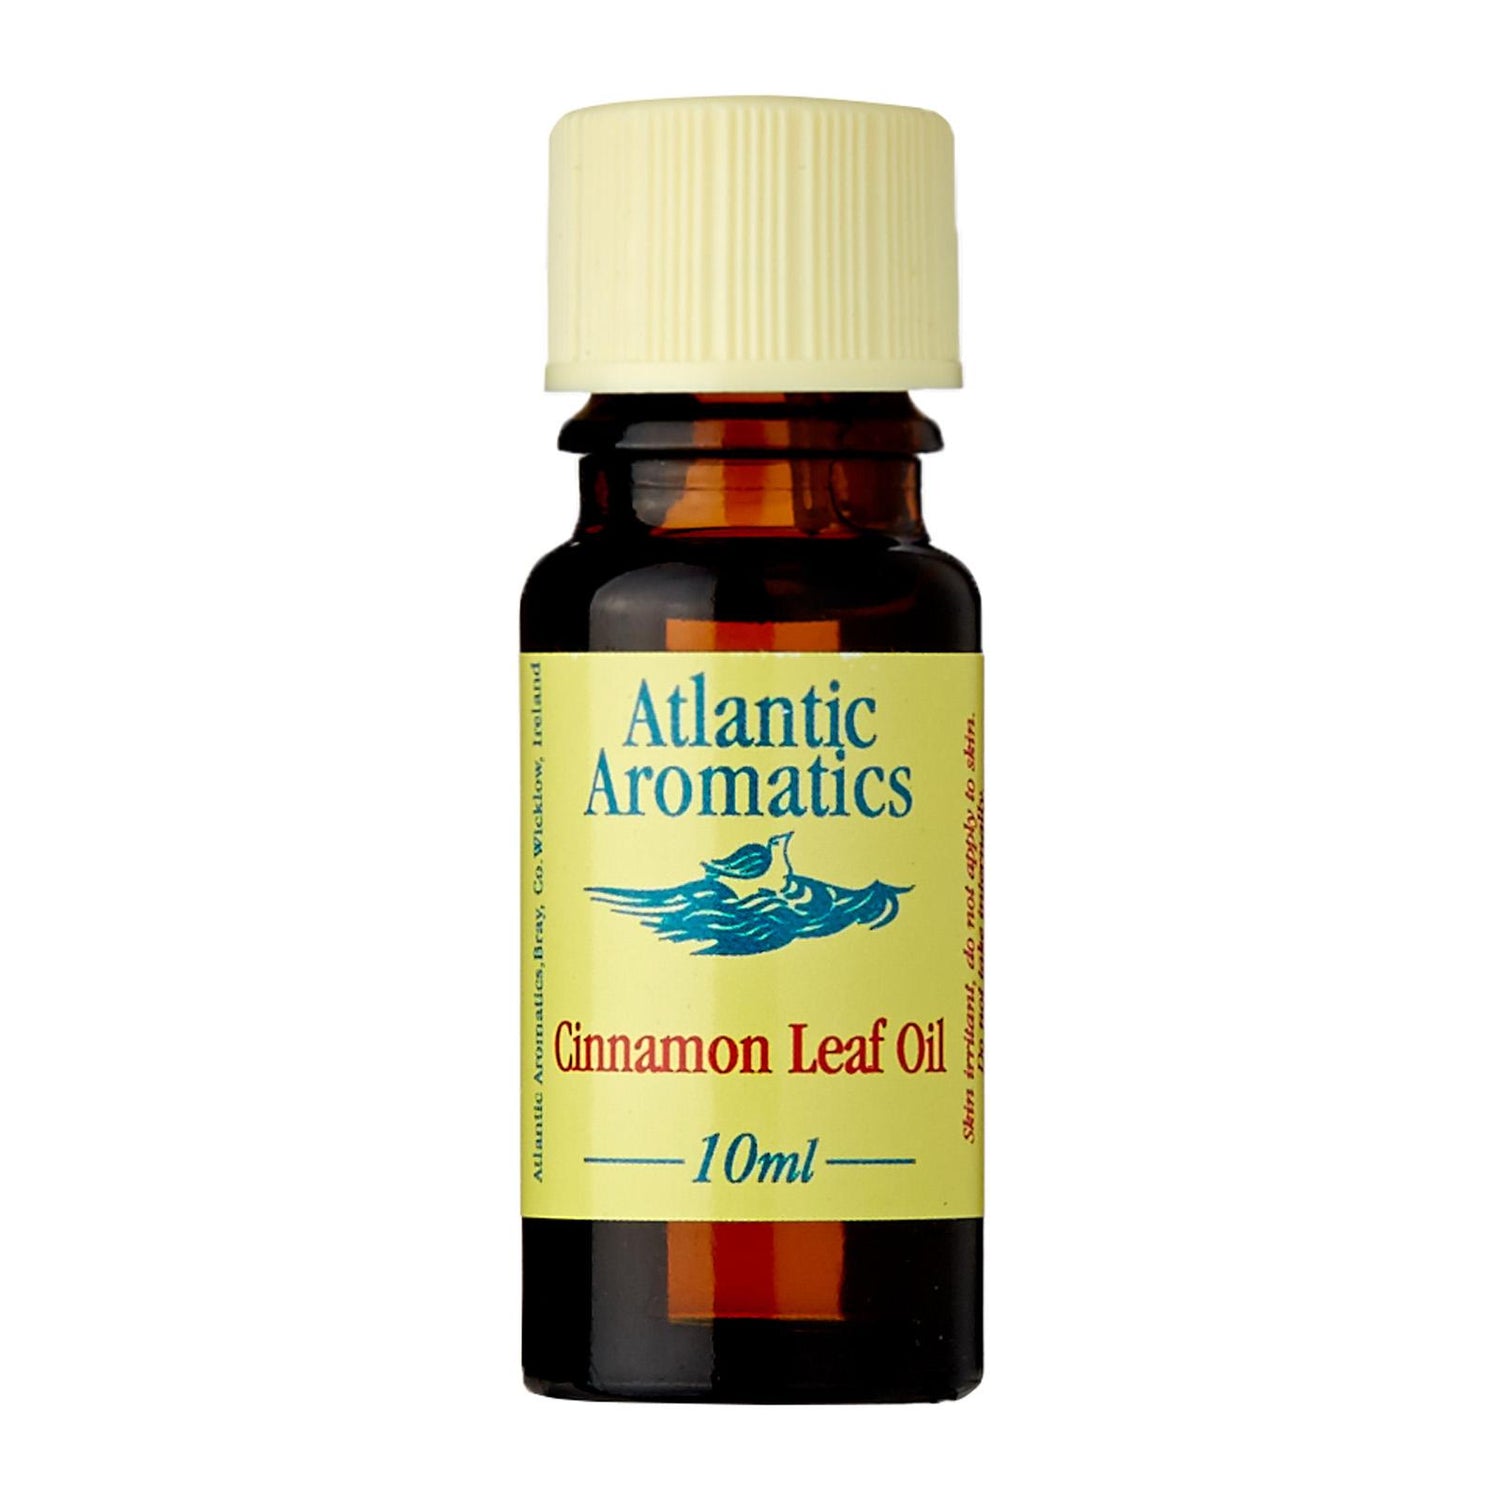 Atlantic Aromatics Cinnamon Leaf Oil Organic